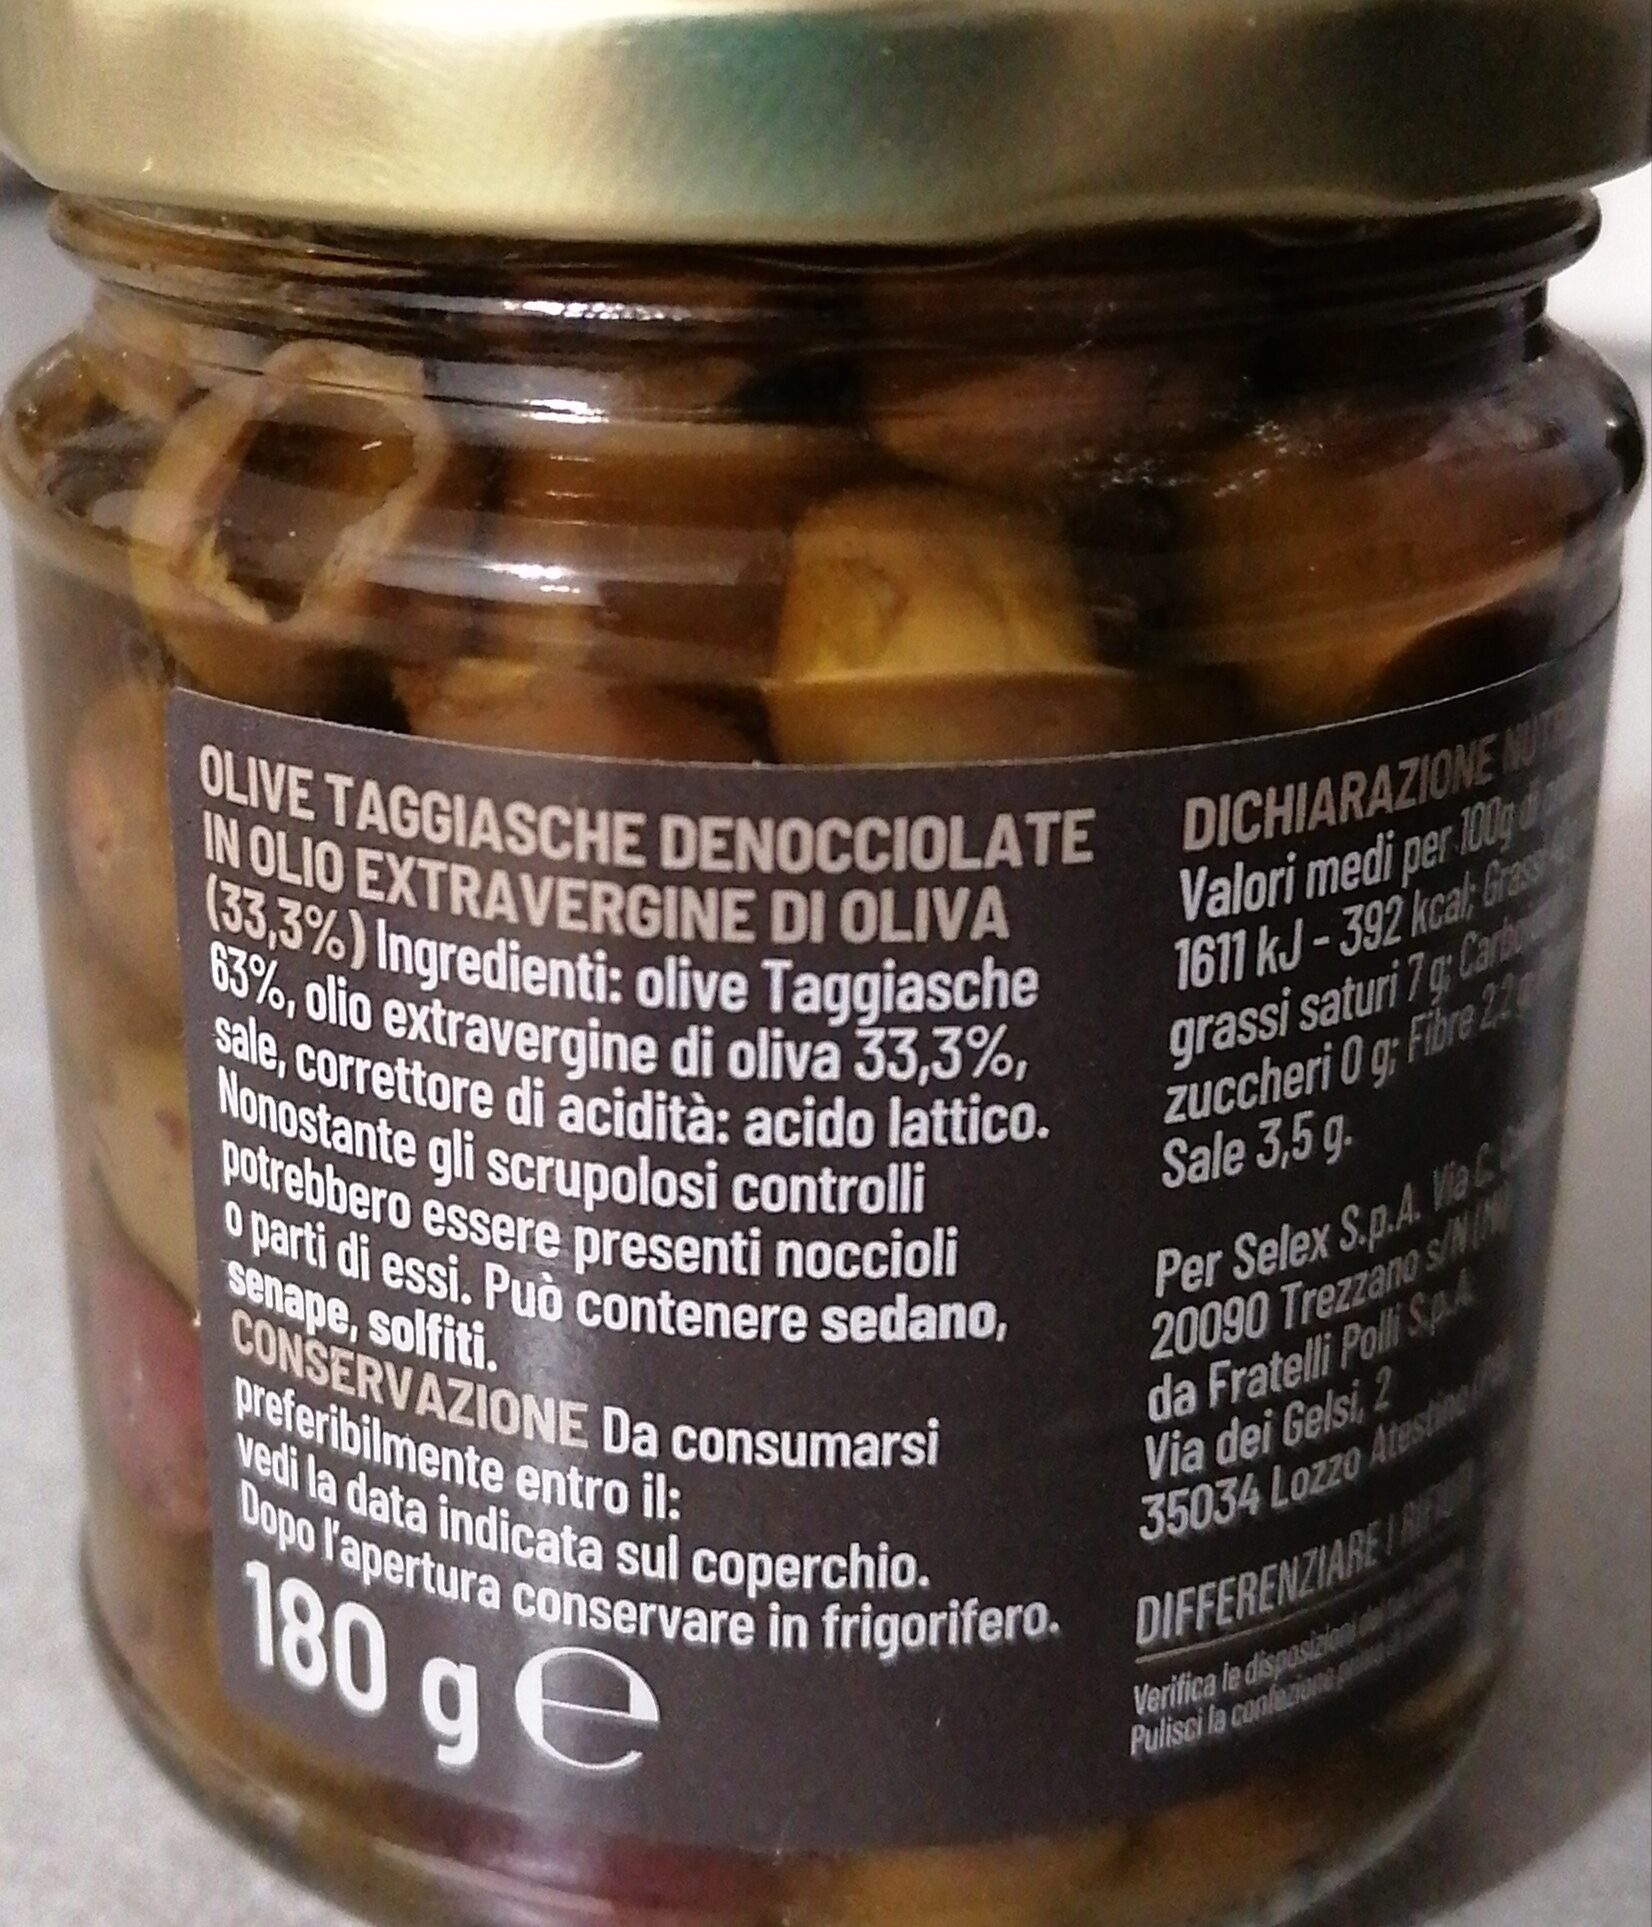 Olive taggiasche denocciolate - Ingredienti